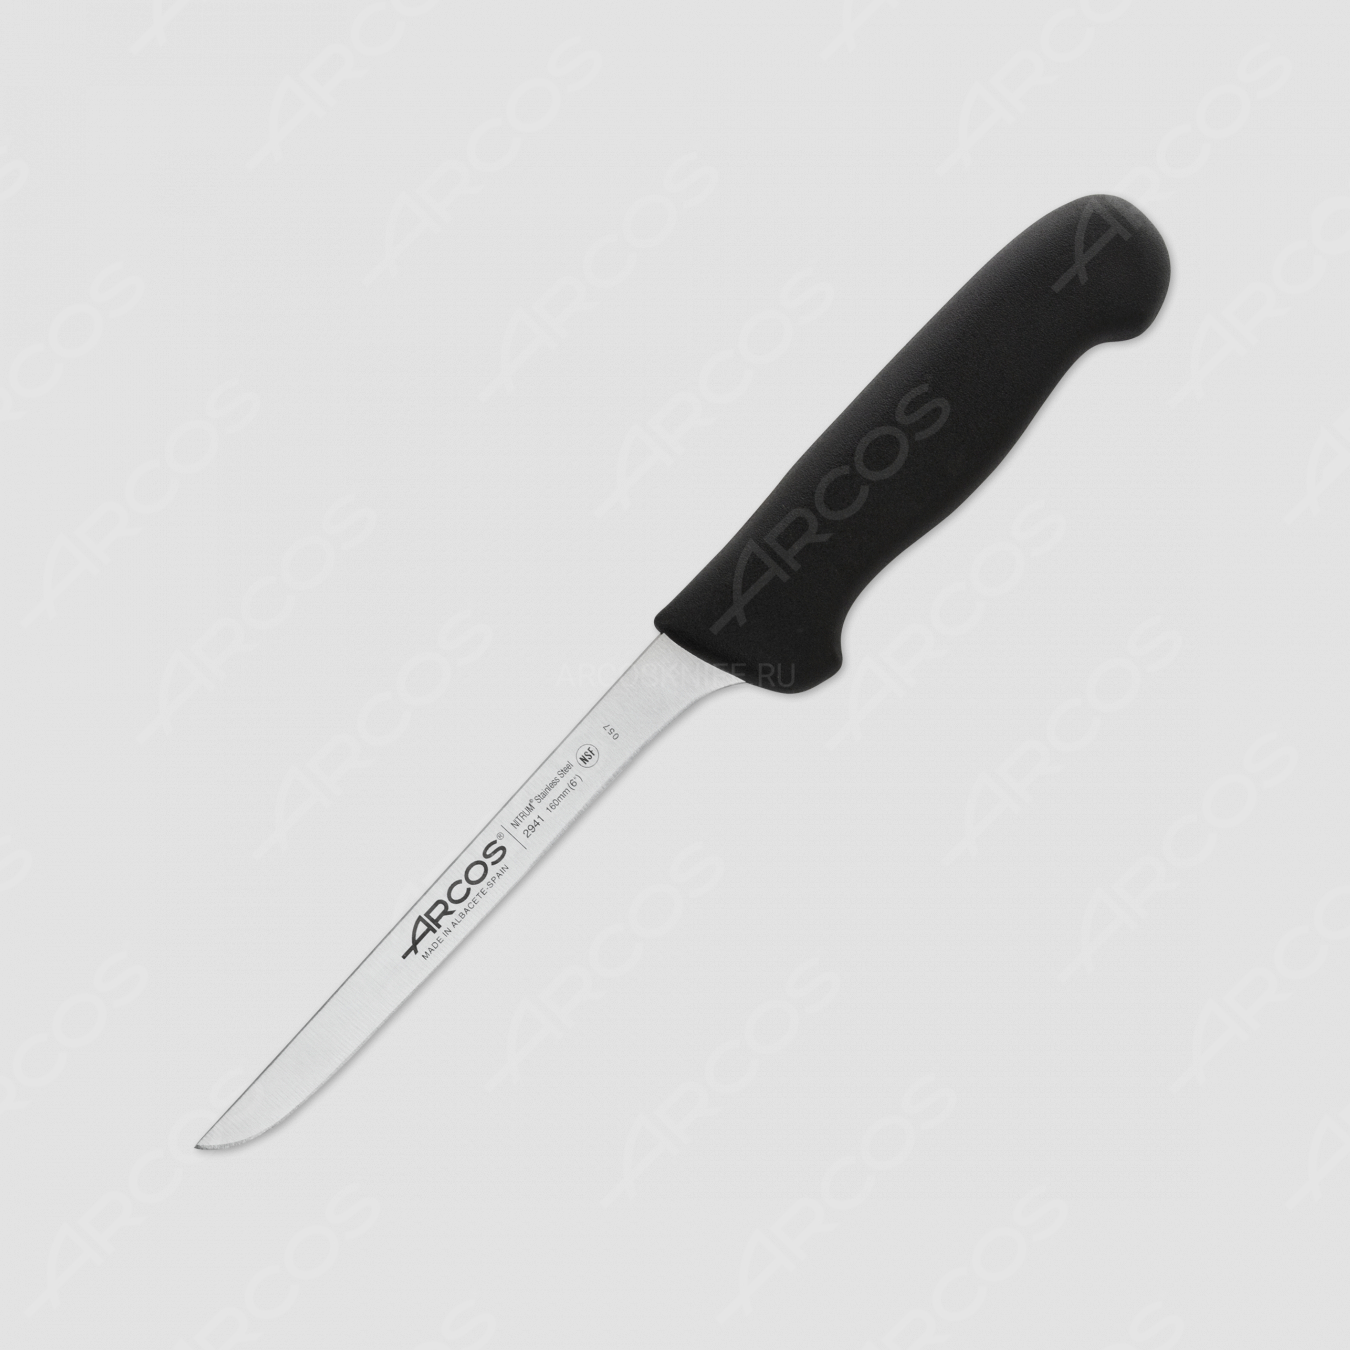 Нож кухонный обвалочный 16 см, рукоять - черная, серия 2900, ARCOS, Испания